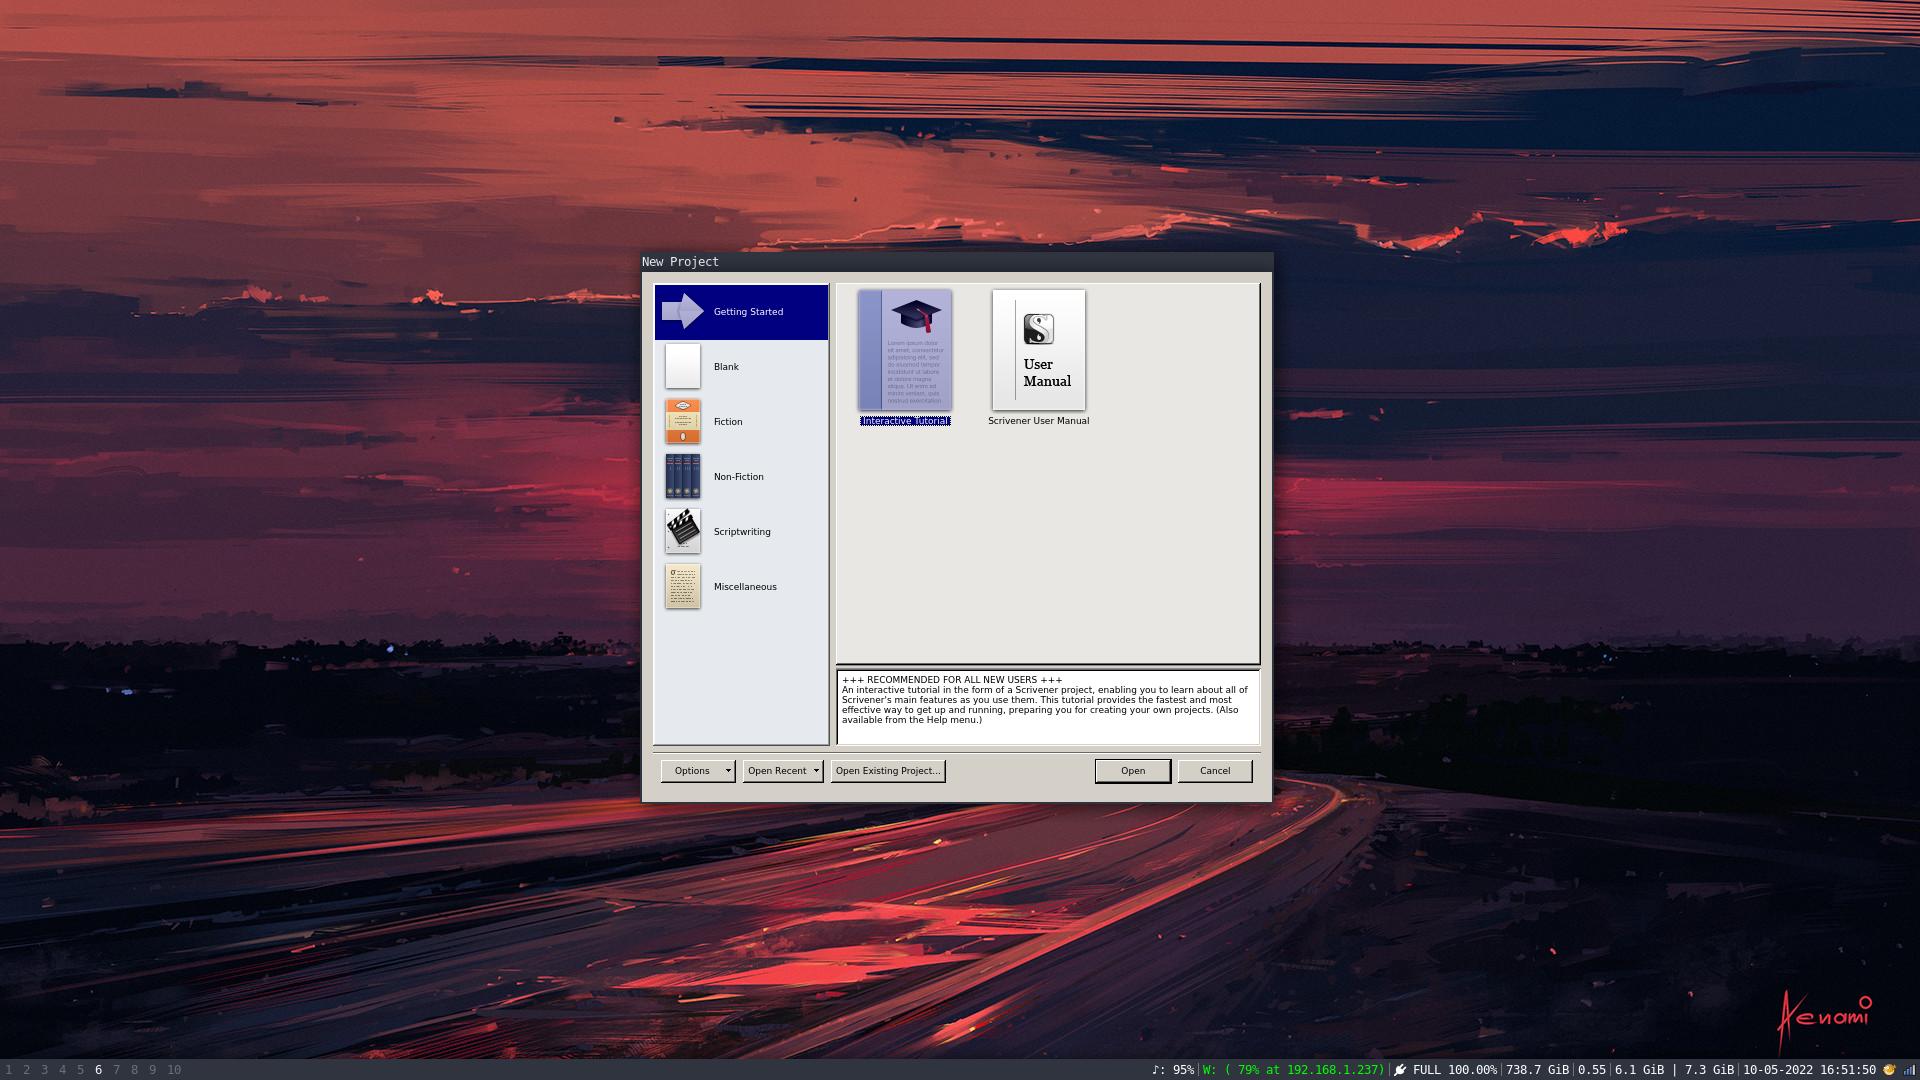 Scrivener 'Getting Started' screen on Ubuntu 22.04